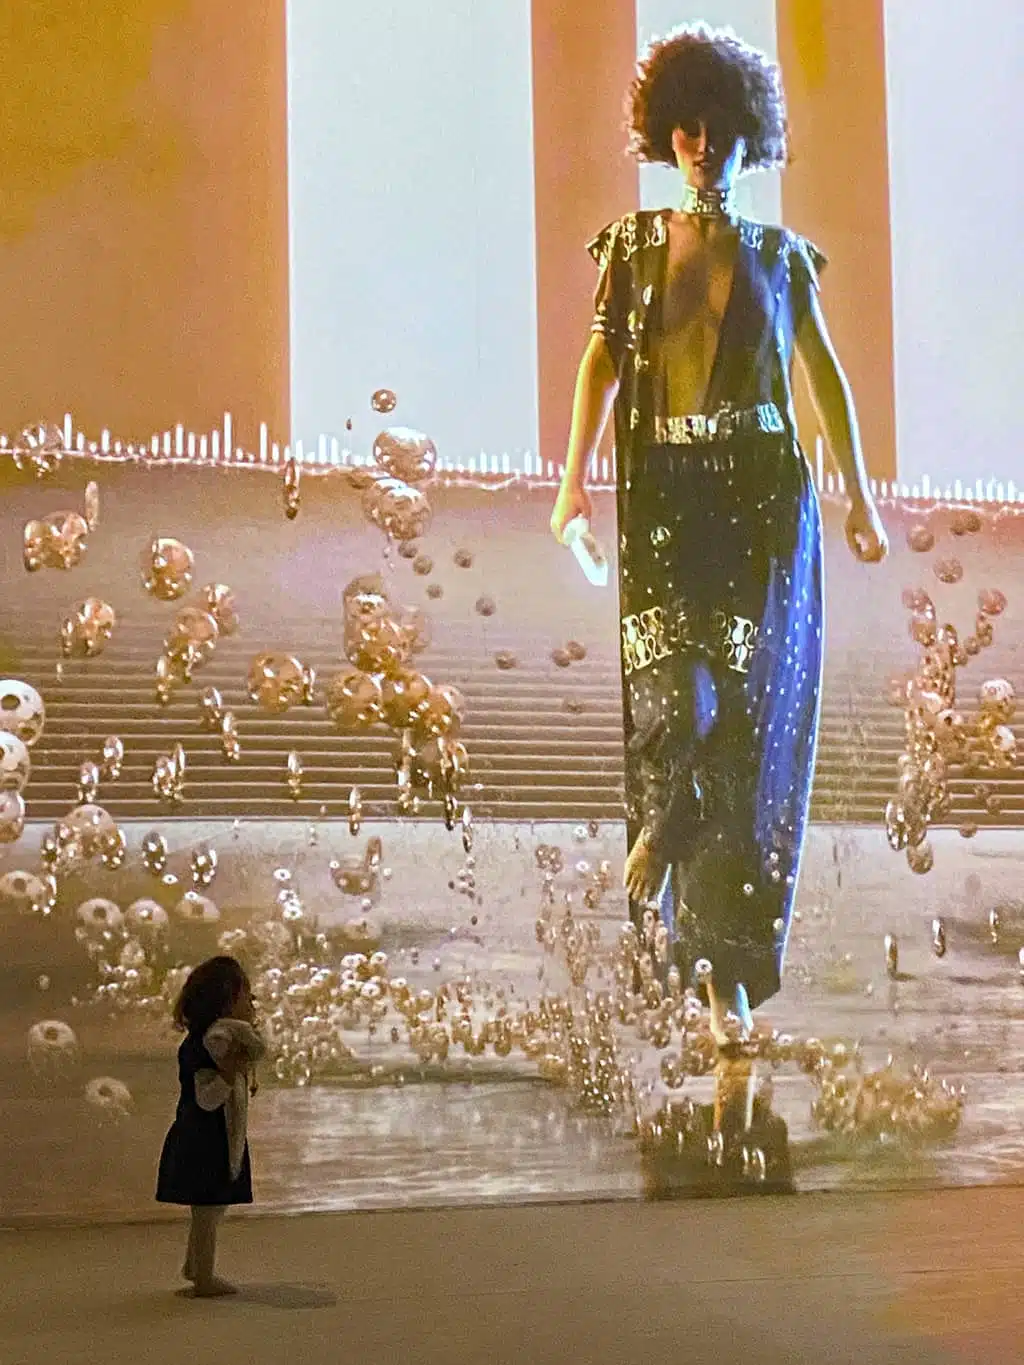 Une petite fille devant le grand écran projetant les oeuvres de Klimt lors de l'expostion immersive de Bruxelles